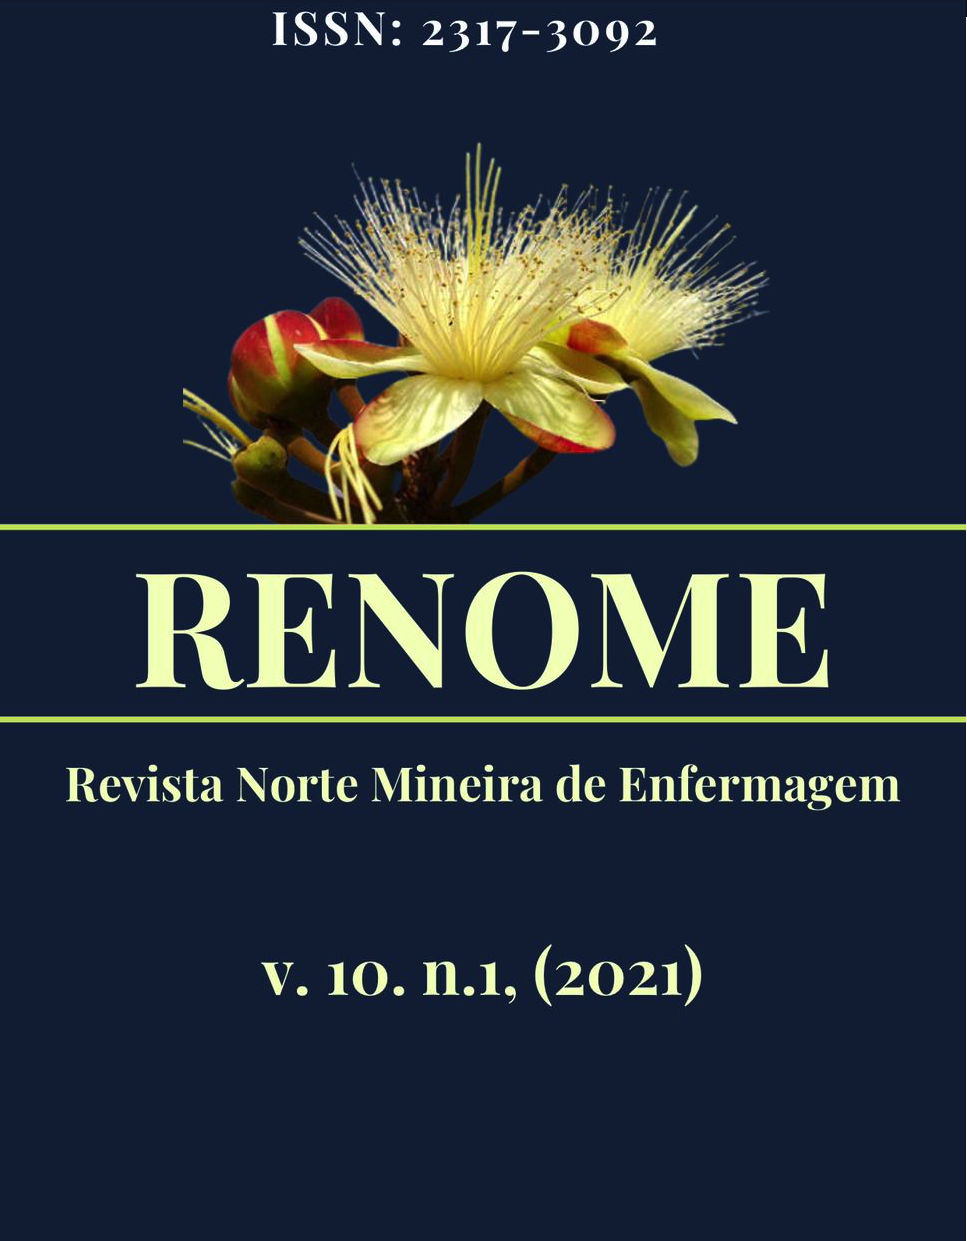 					Visualizar v. 10 n. 1 (2021): Revista Norte Mineira de Enfermagem - RENOME
				